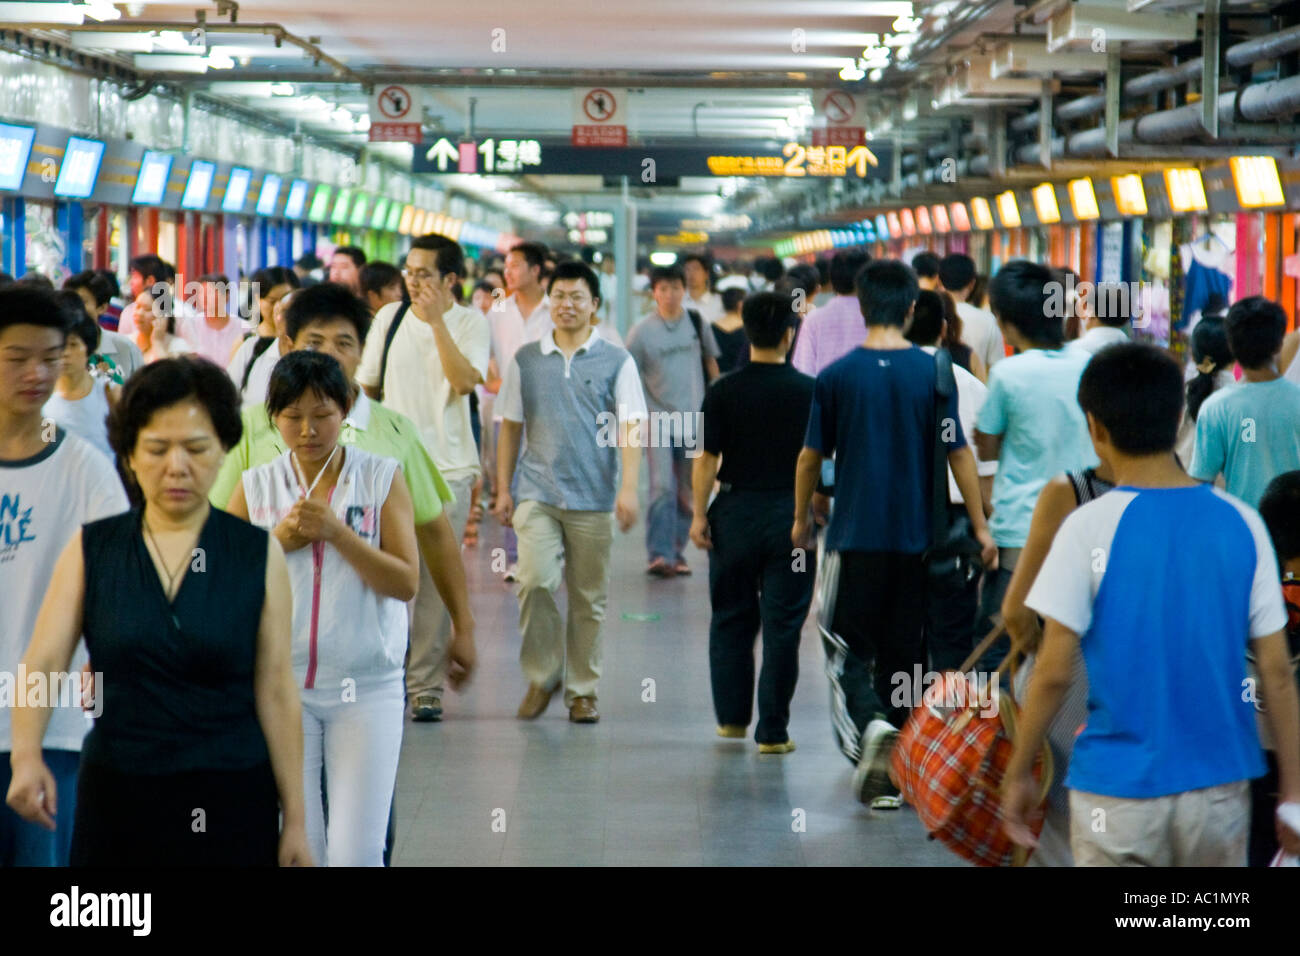 Piétonne animée zone commerçante commerciale dans la station de métro de Shanghai Shanghai Chine Banque D'Images